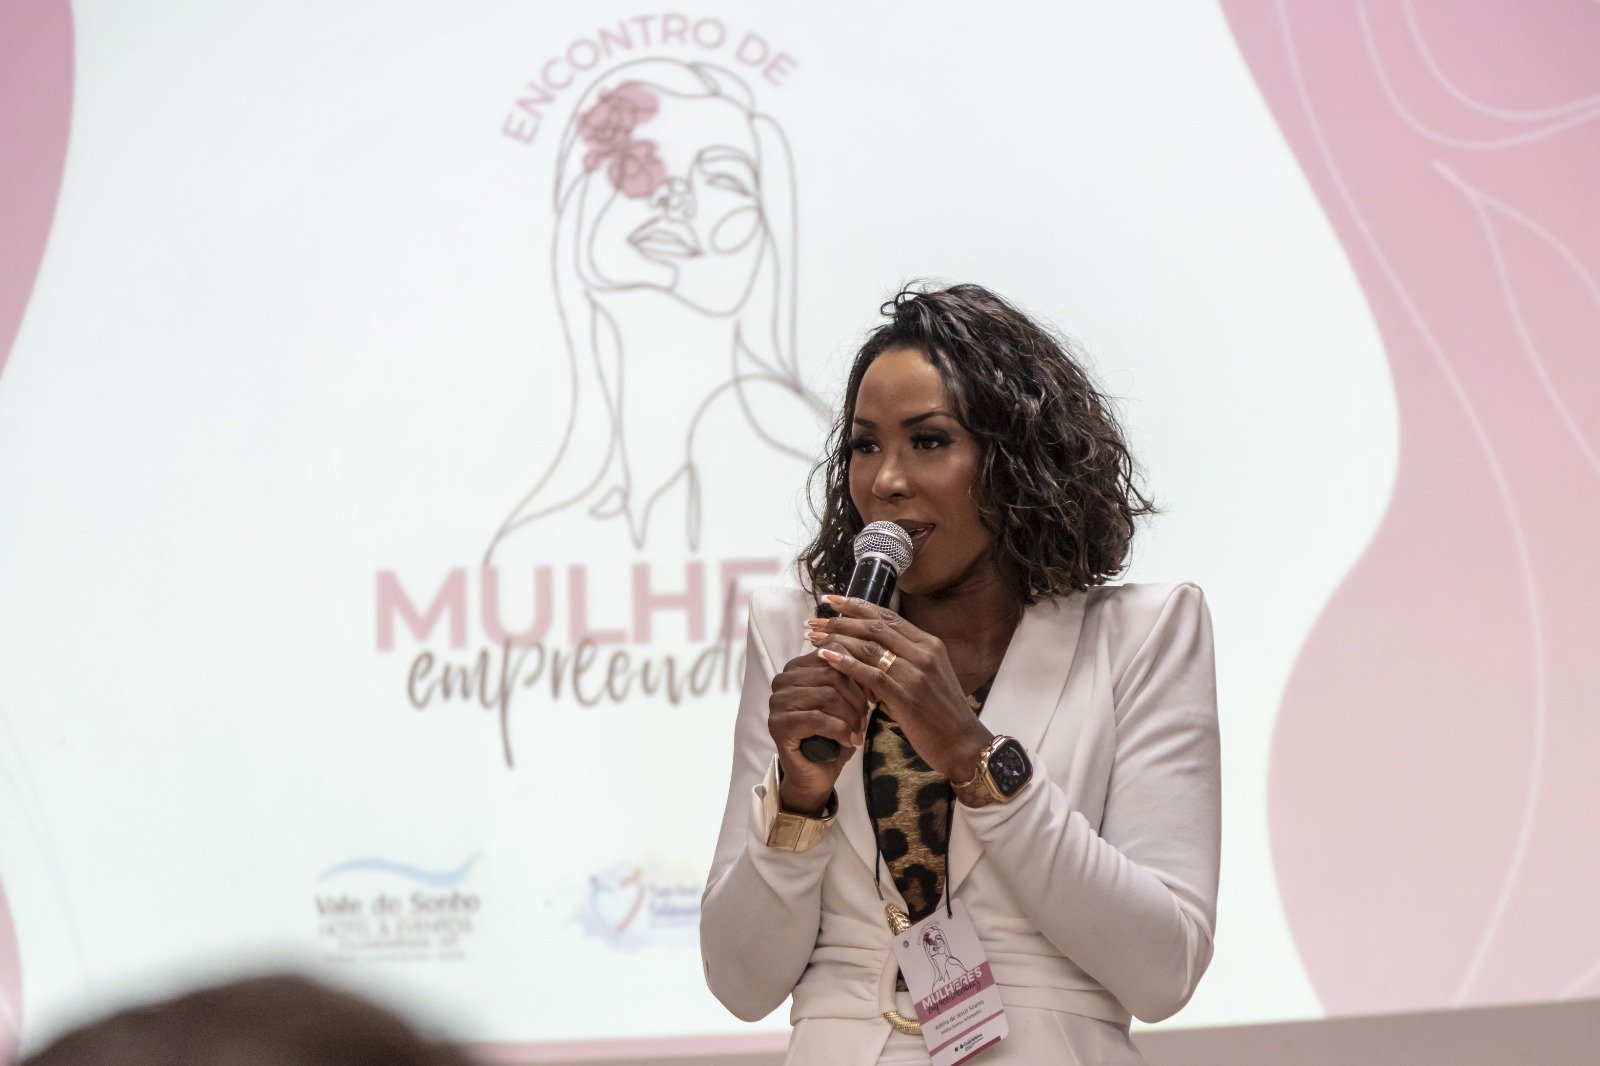 Encontro em Guararema fortalece papel feminino nos negócios